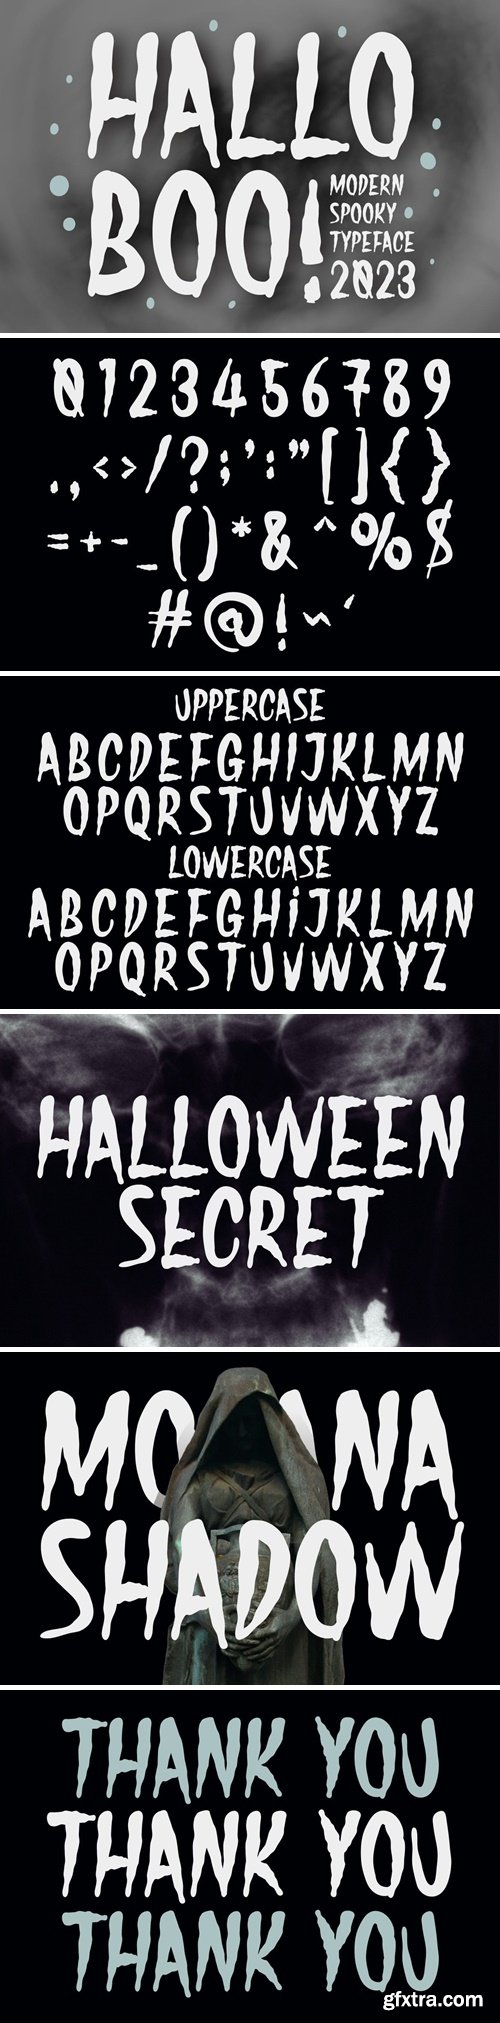 Hallo Boo - Modern Spooky Typeface